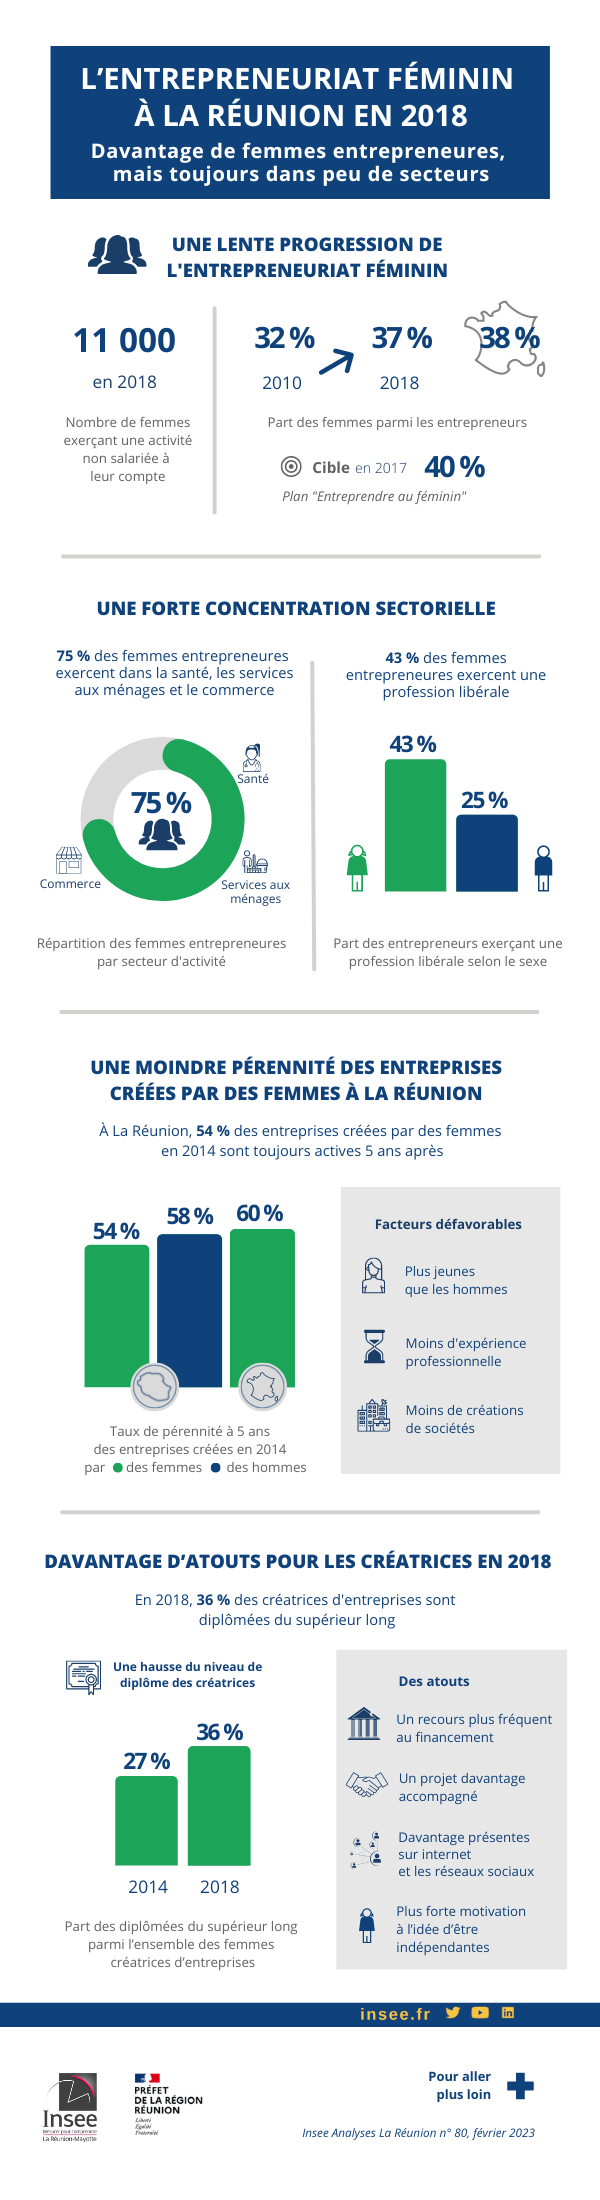 Infographie sur l’entrepreneuriat féminin à La Réunion en 2018.